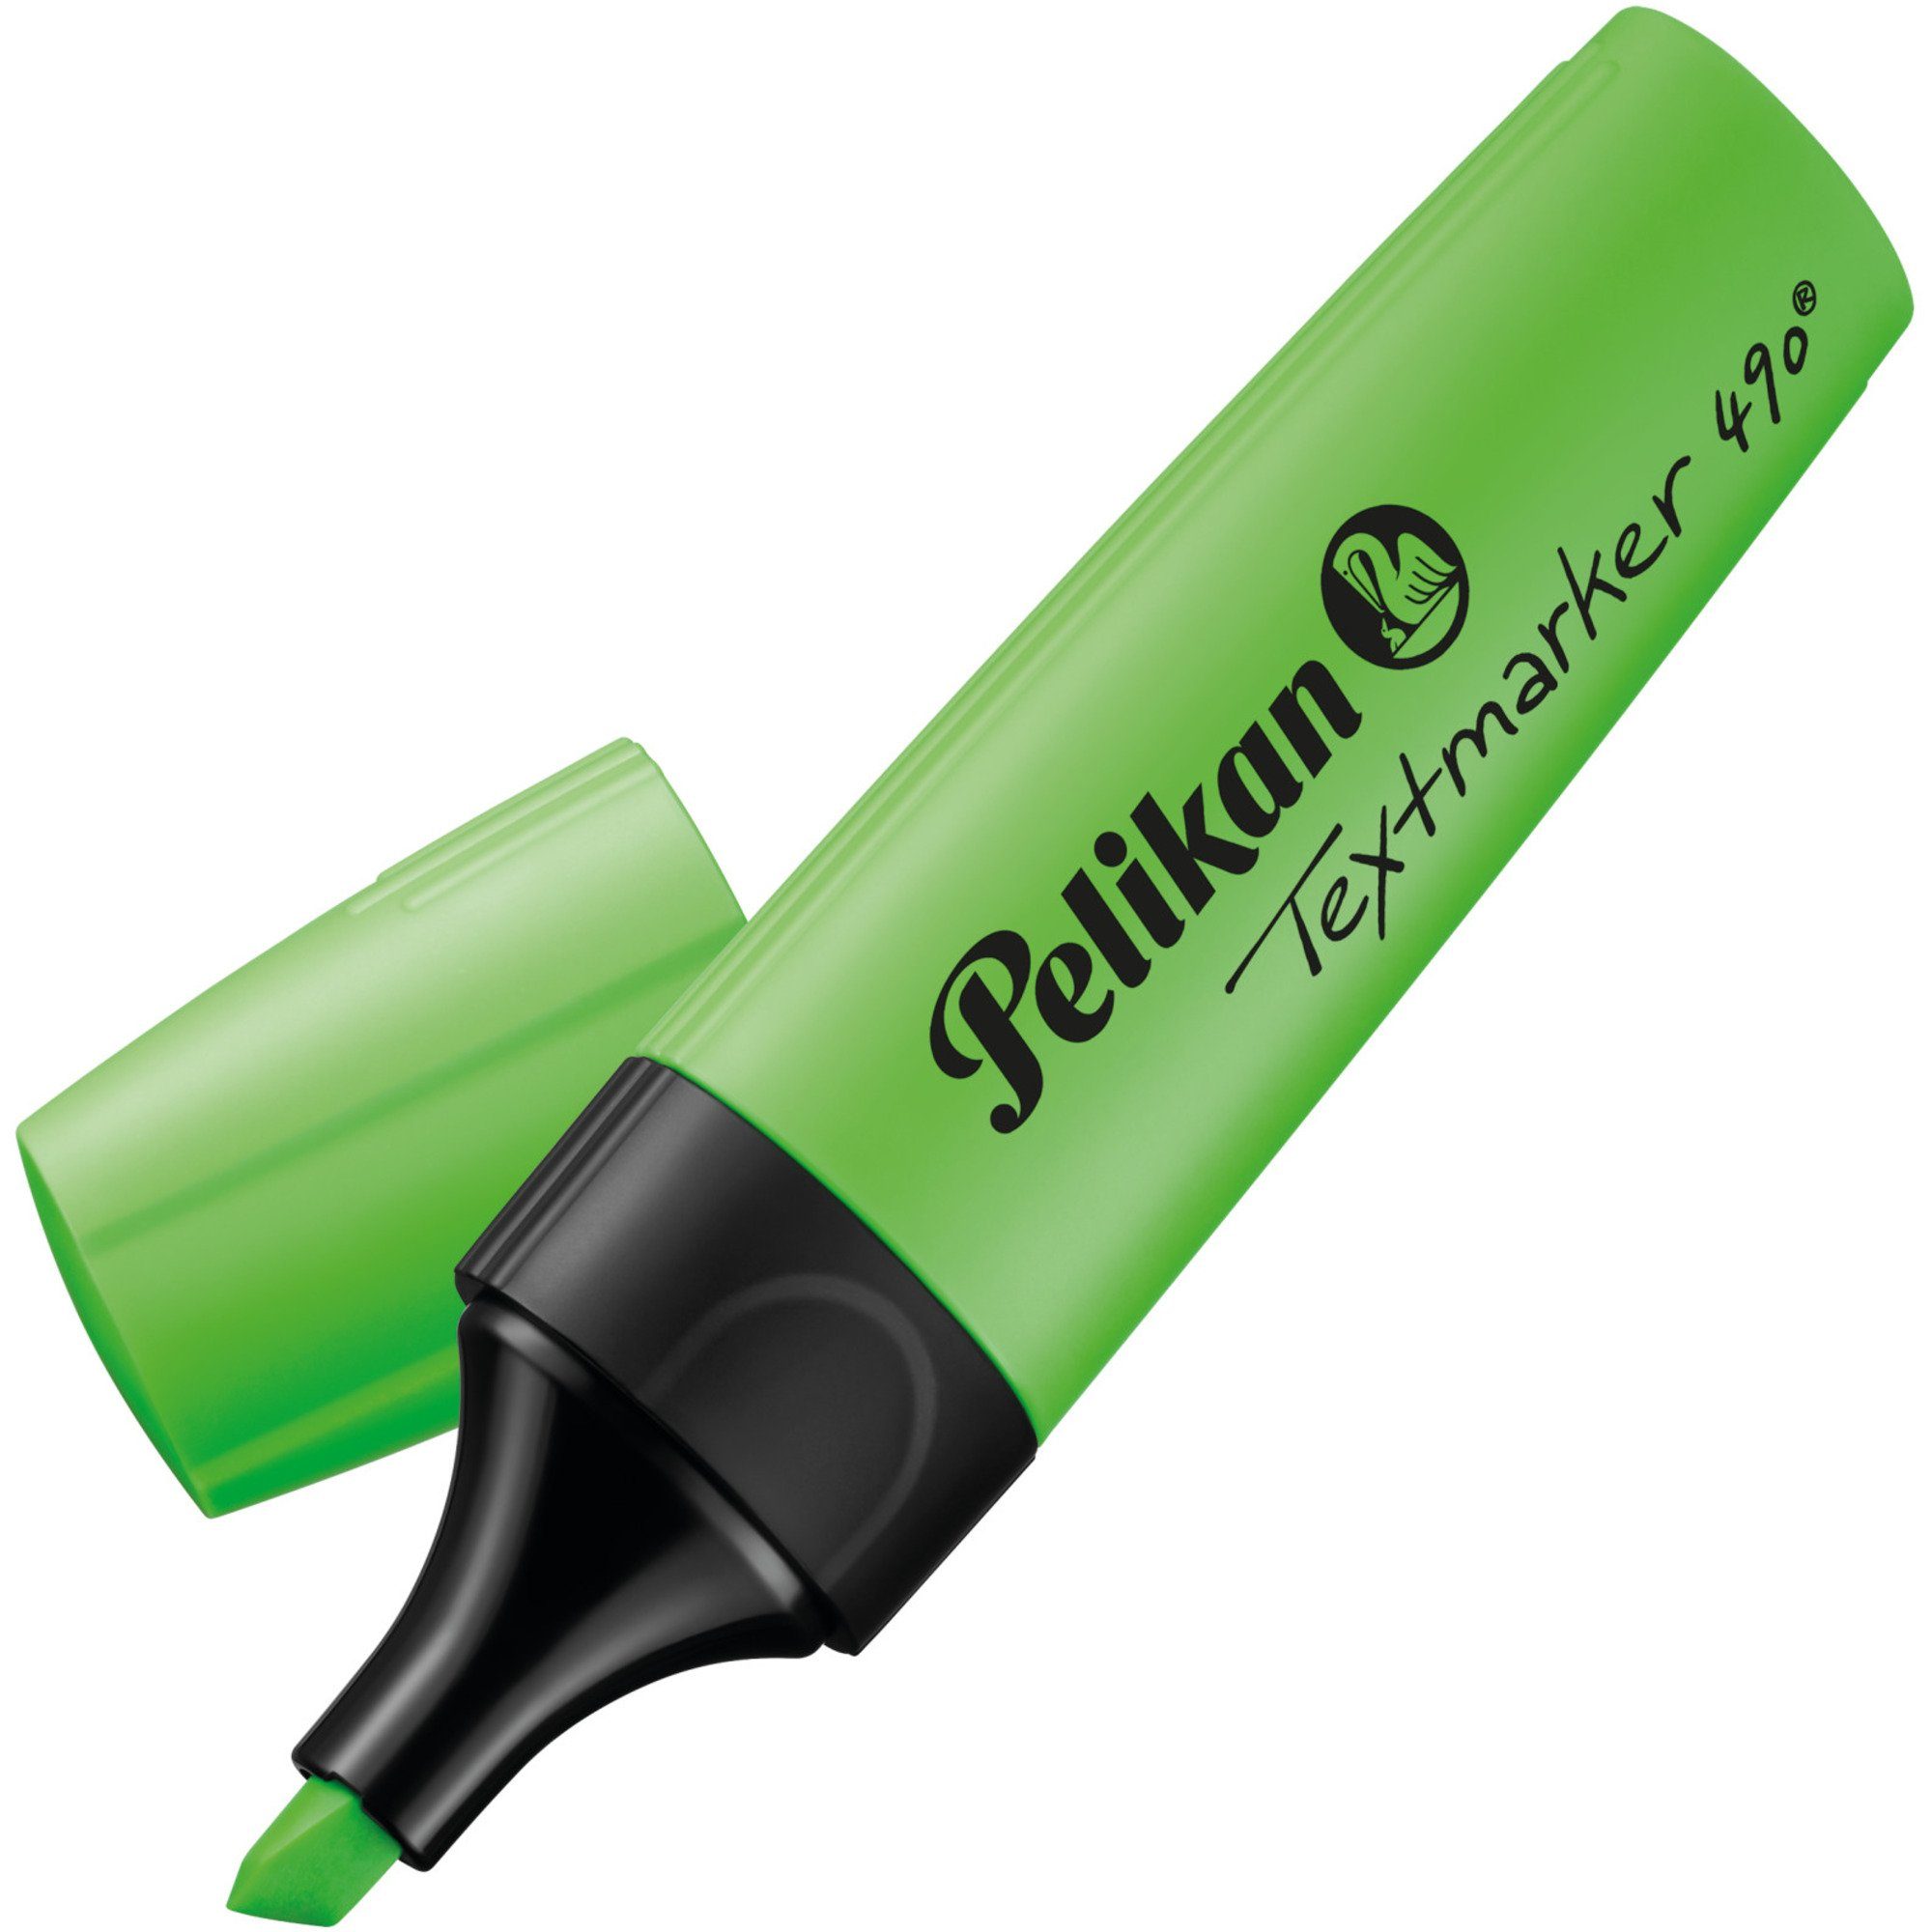 Textmarker Stift 490 Pelikan Leucht-Grün, Druckkugelschreiber Pelikan